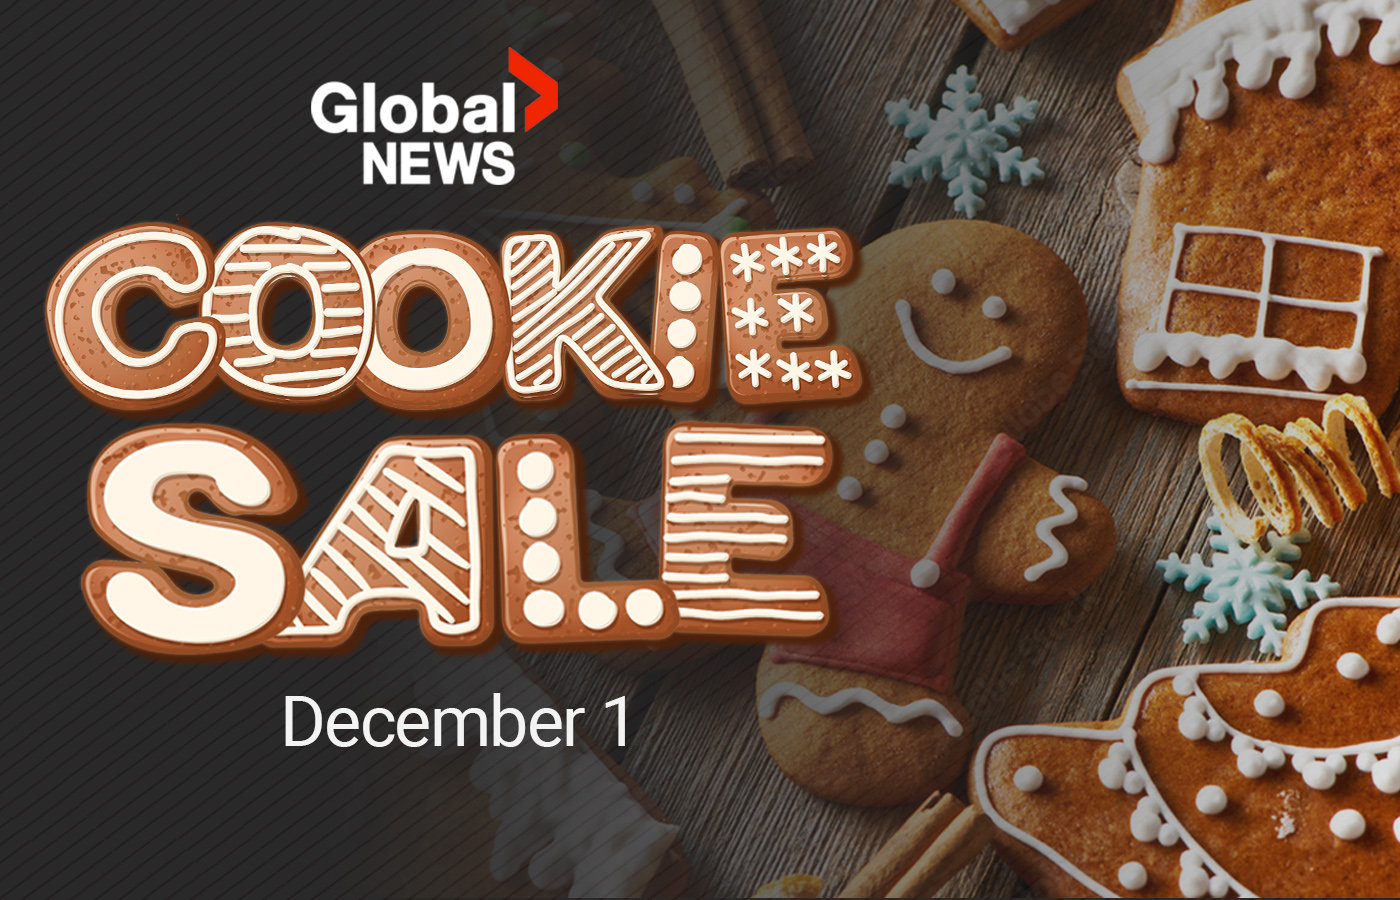 Cookie Sales